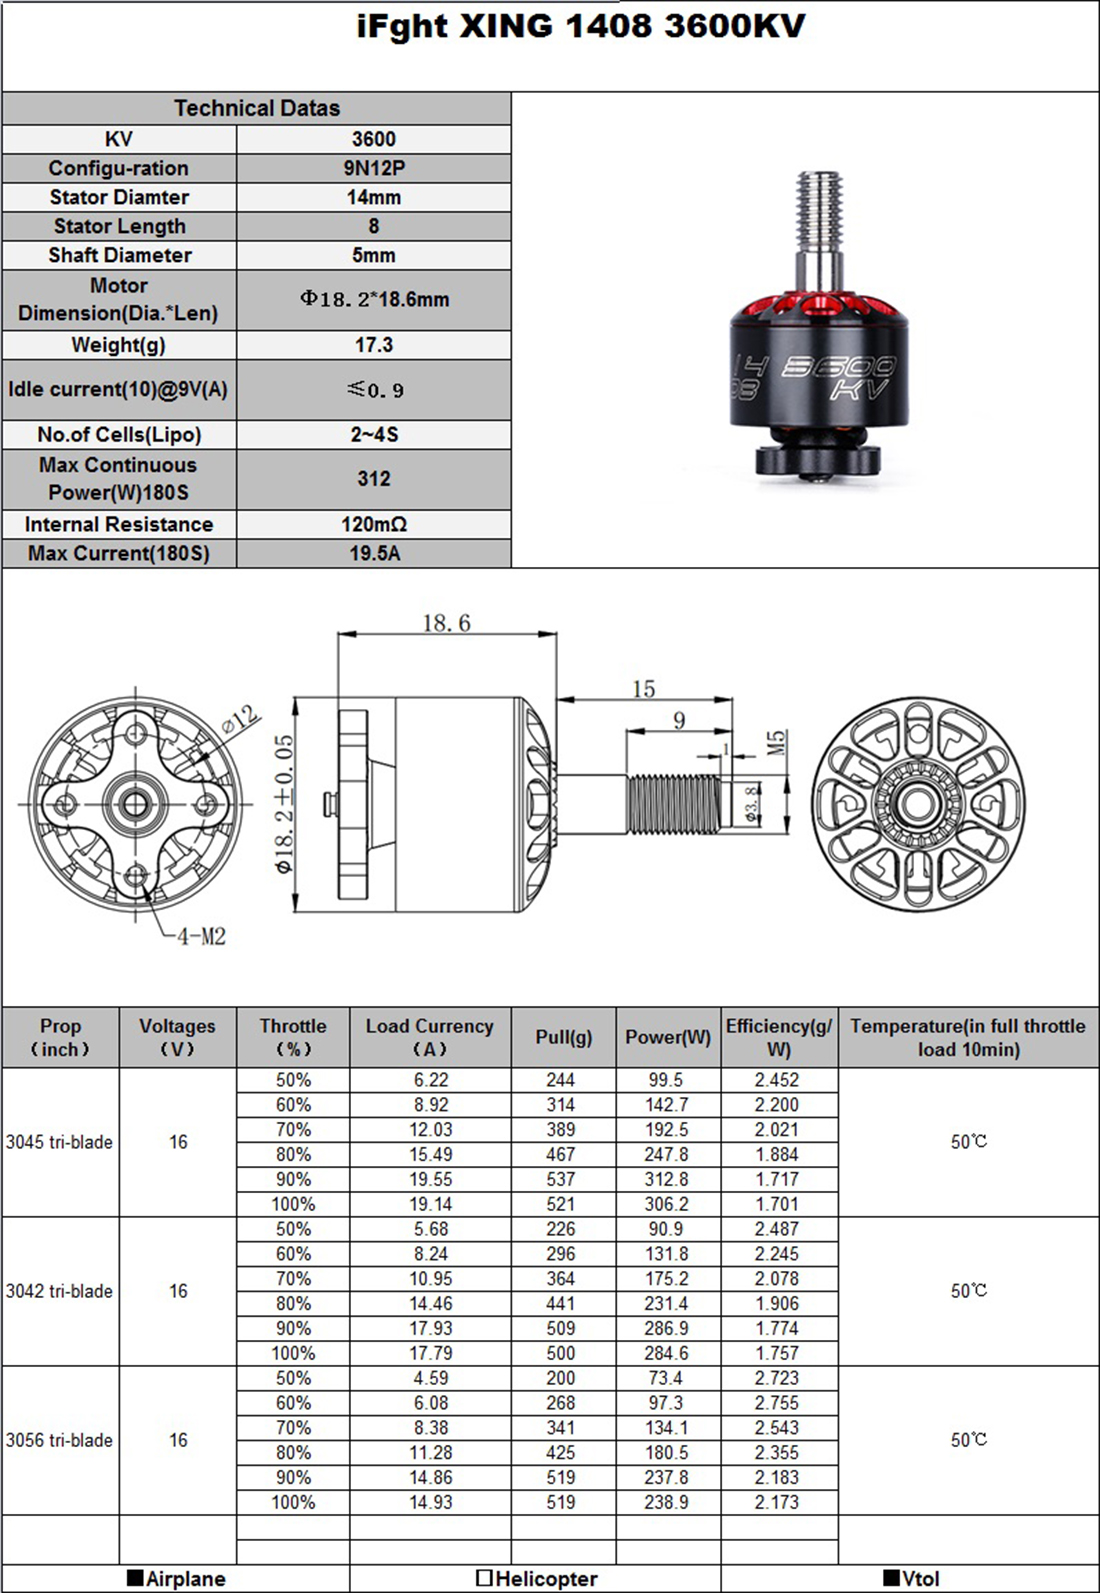 IFlight Xing 1408 3600kv 4100kv brushless motor 5mm ola FPV NextGen motor